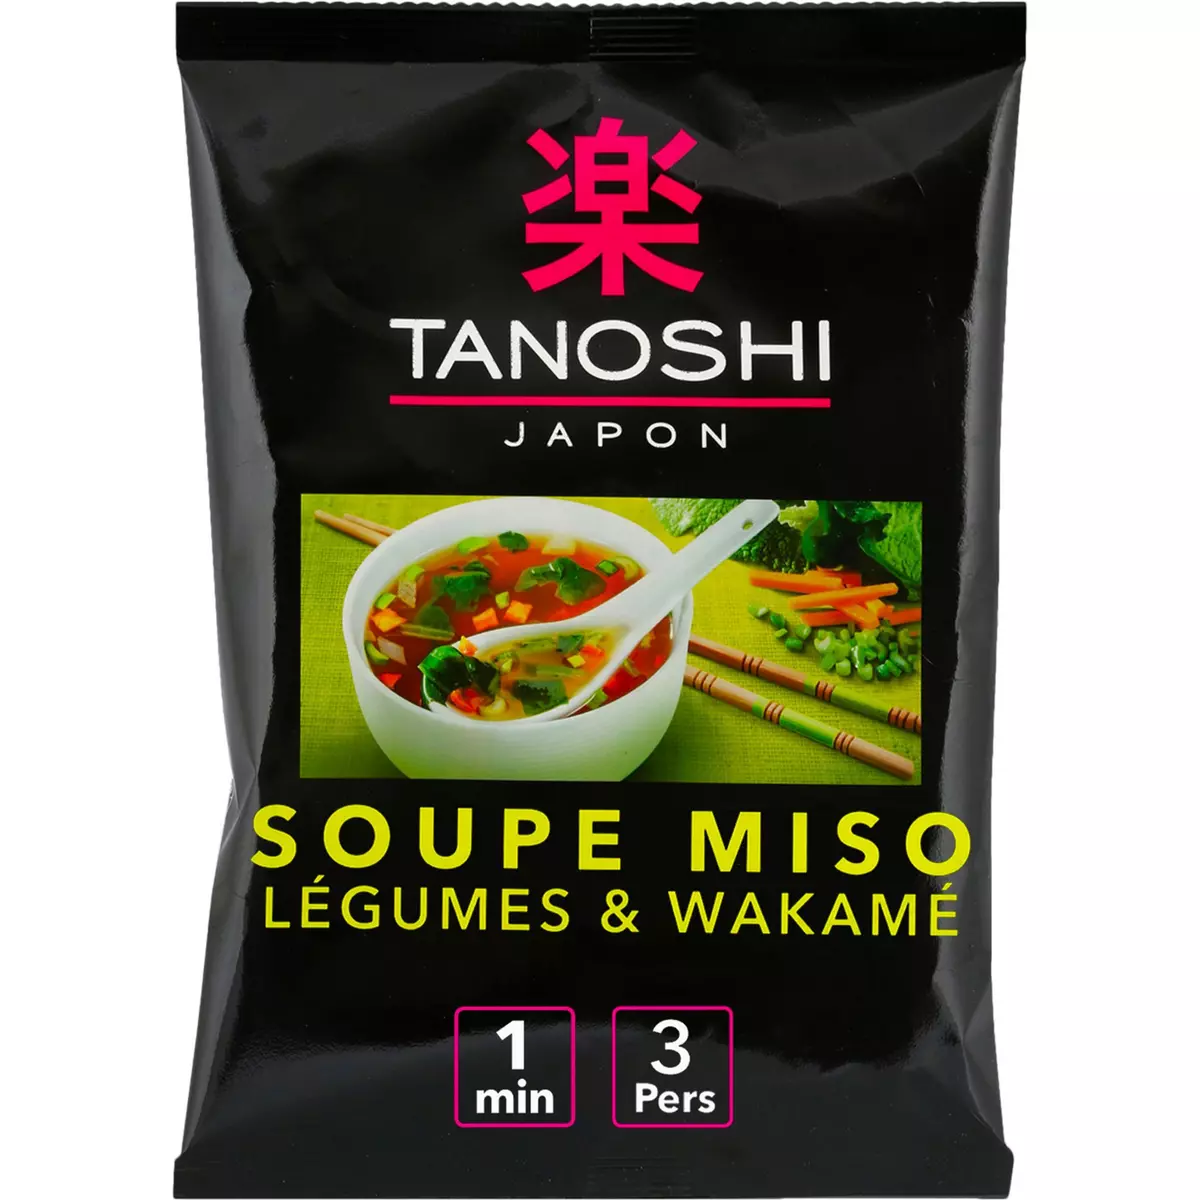 TANOSHI Soupe miso instantanée légumes et wakamé  3 personnes 65g